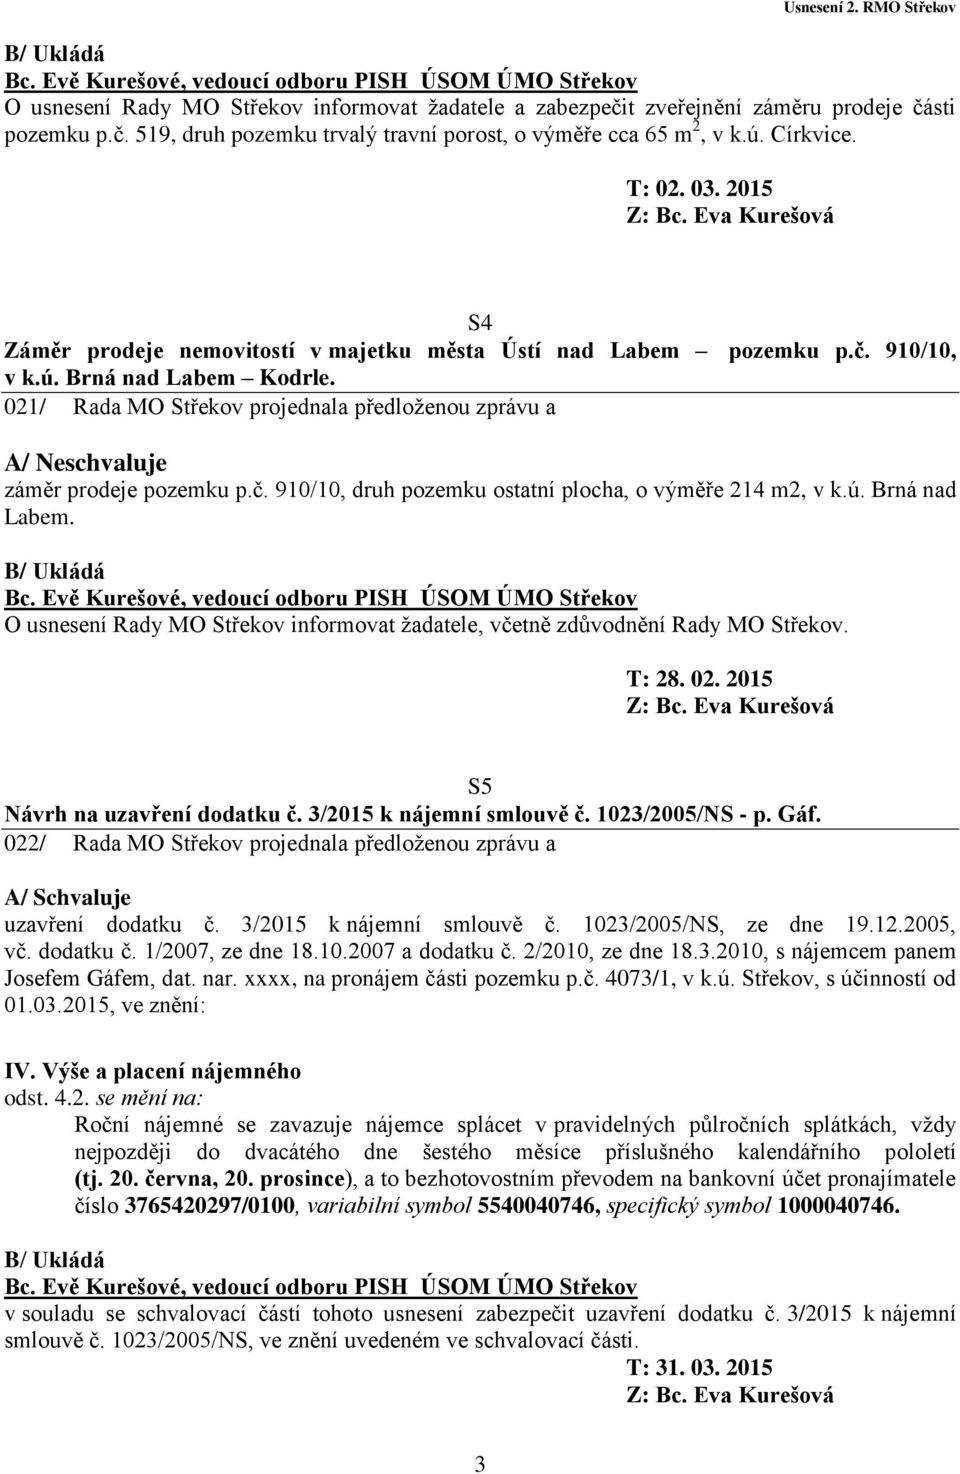 021/ Rada MO Střekov projednala předloženou zprávu a A/ Neschvaluje záměr prodeje pozemku p.č. 910/10, druh pozemku ostatní plocha, o výměře 214 m2, v k.ú. Brná nad Labem.